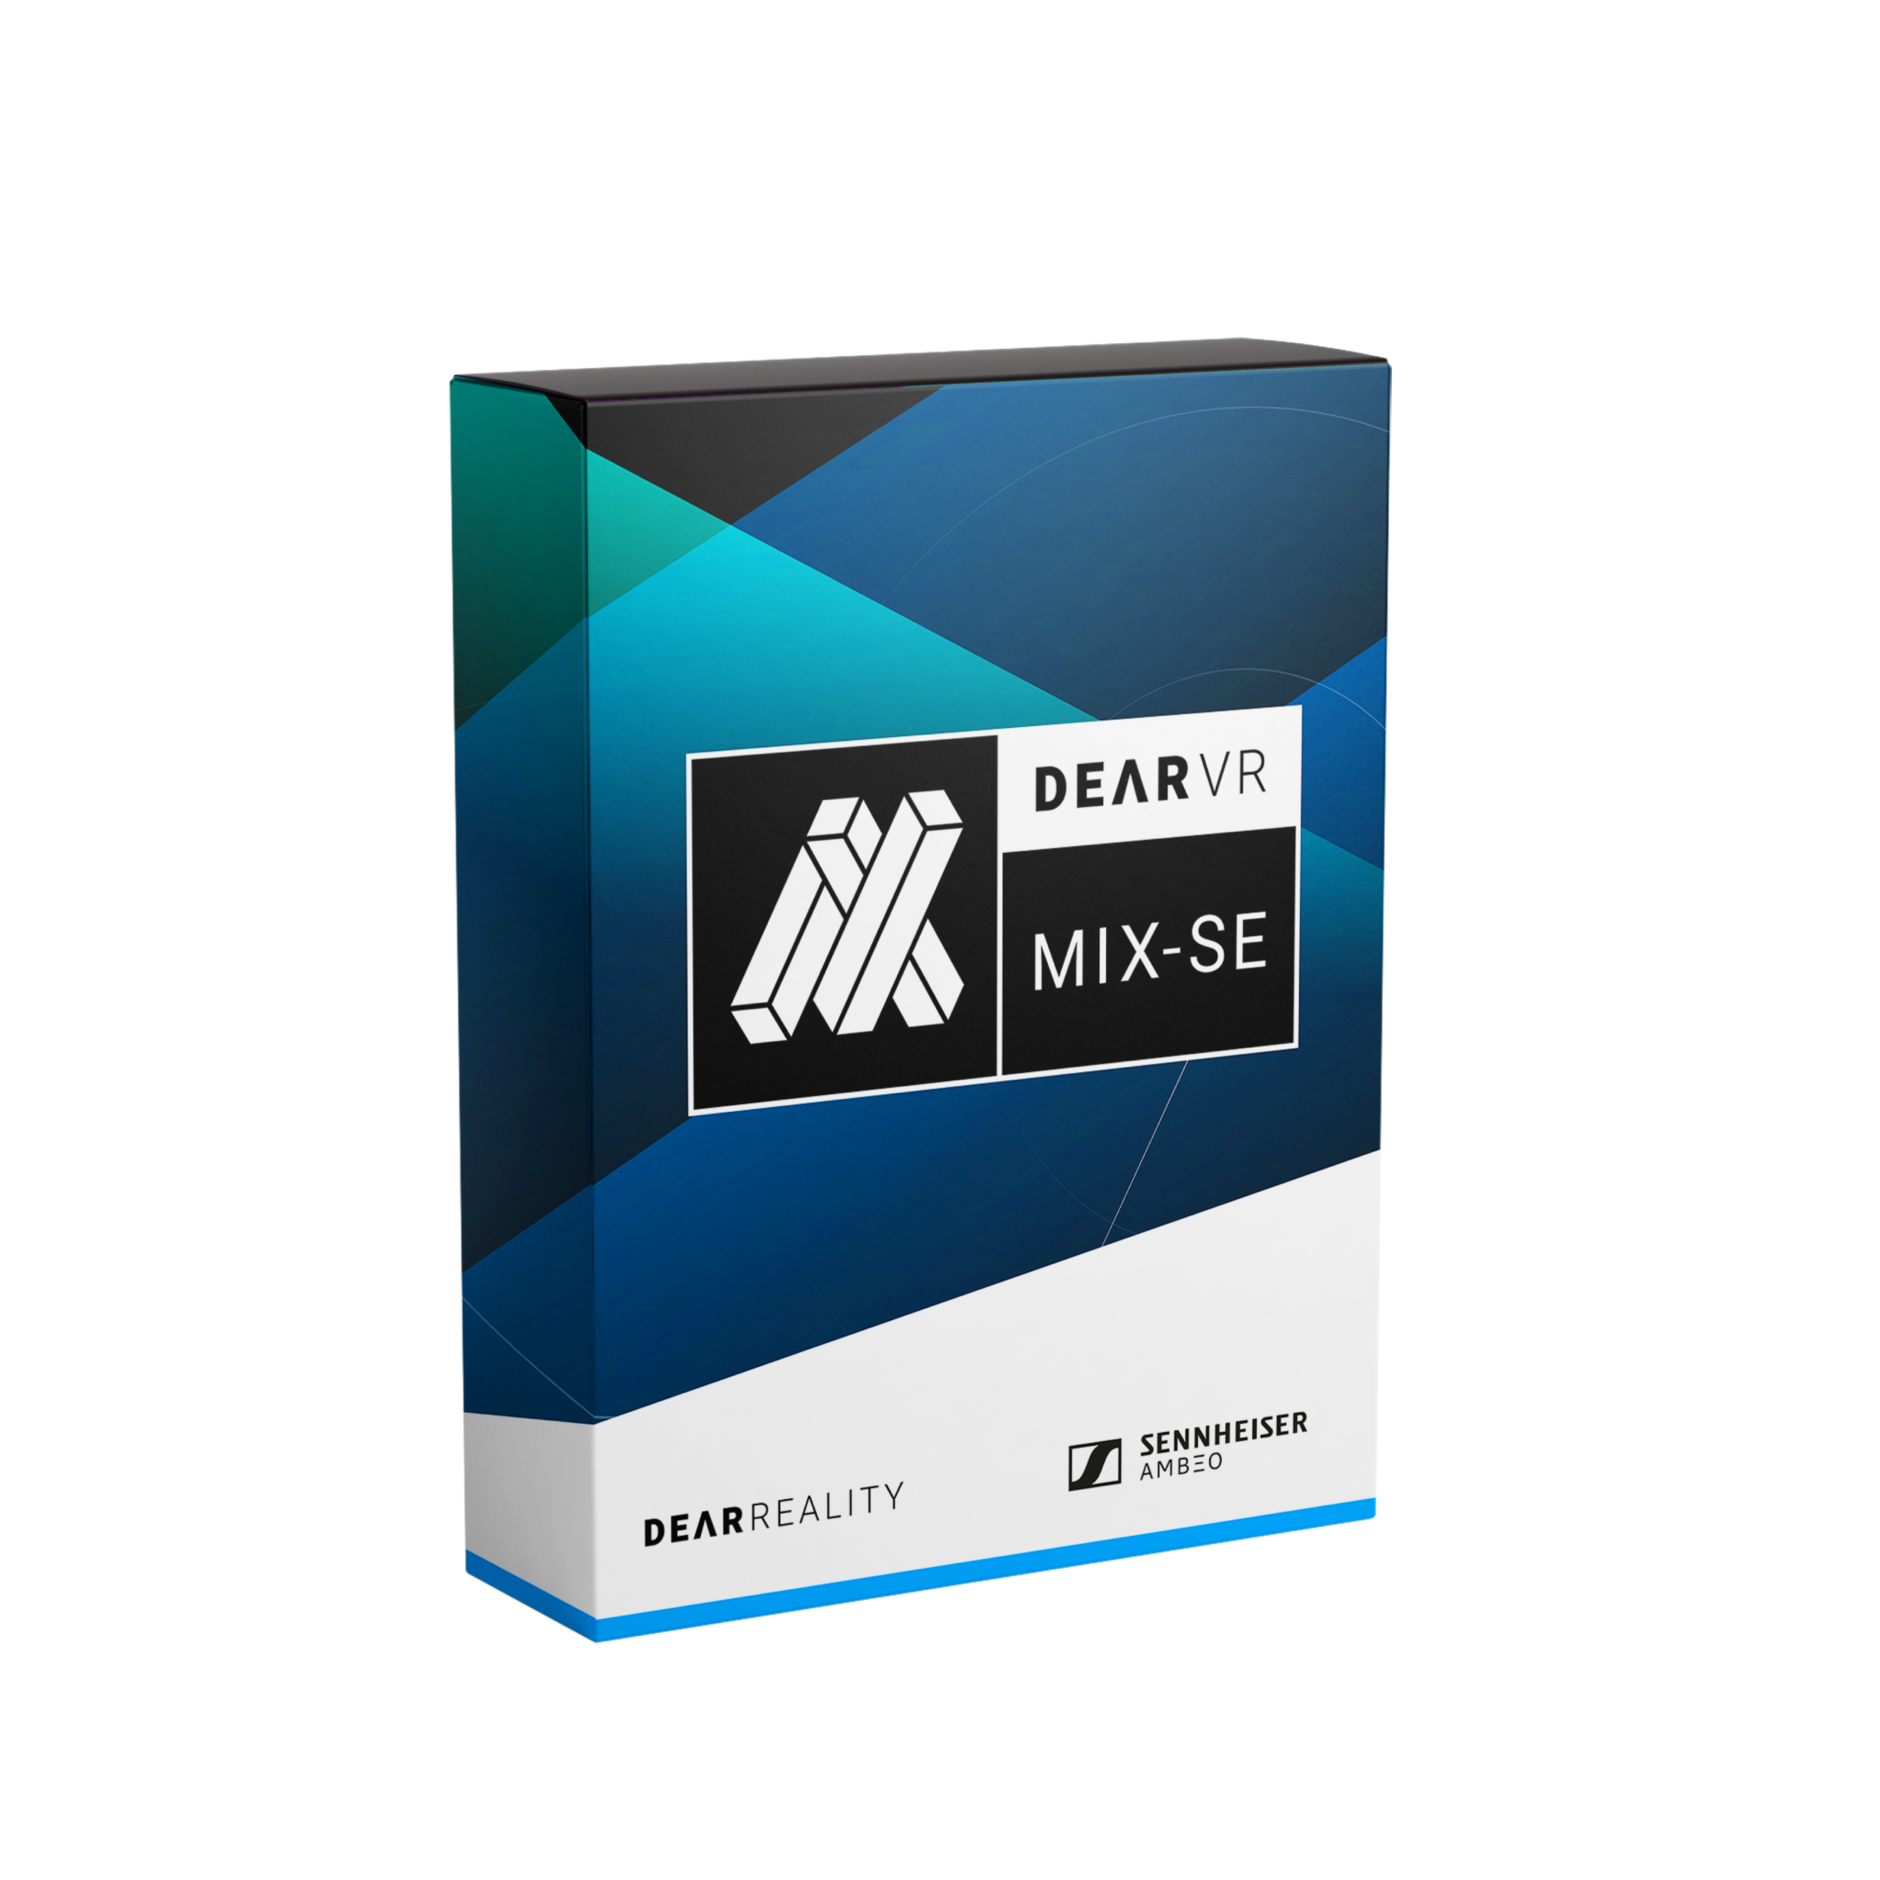 Inclui o plugin de mixagem virtual dearVR MIX-SE